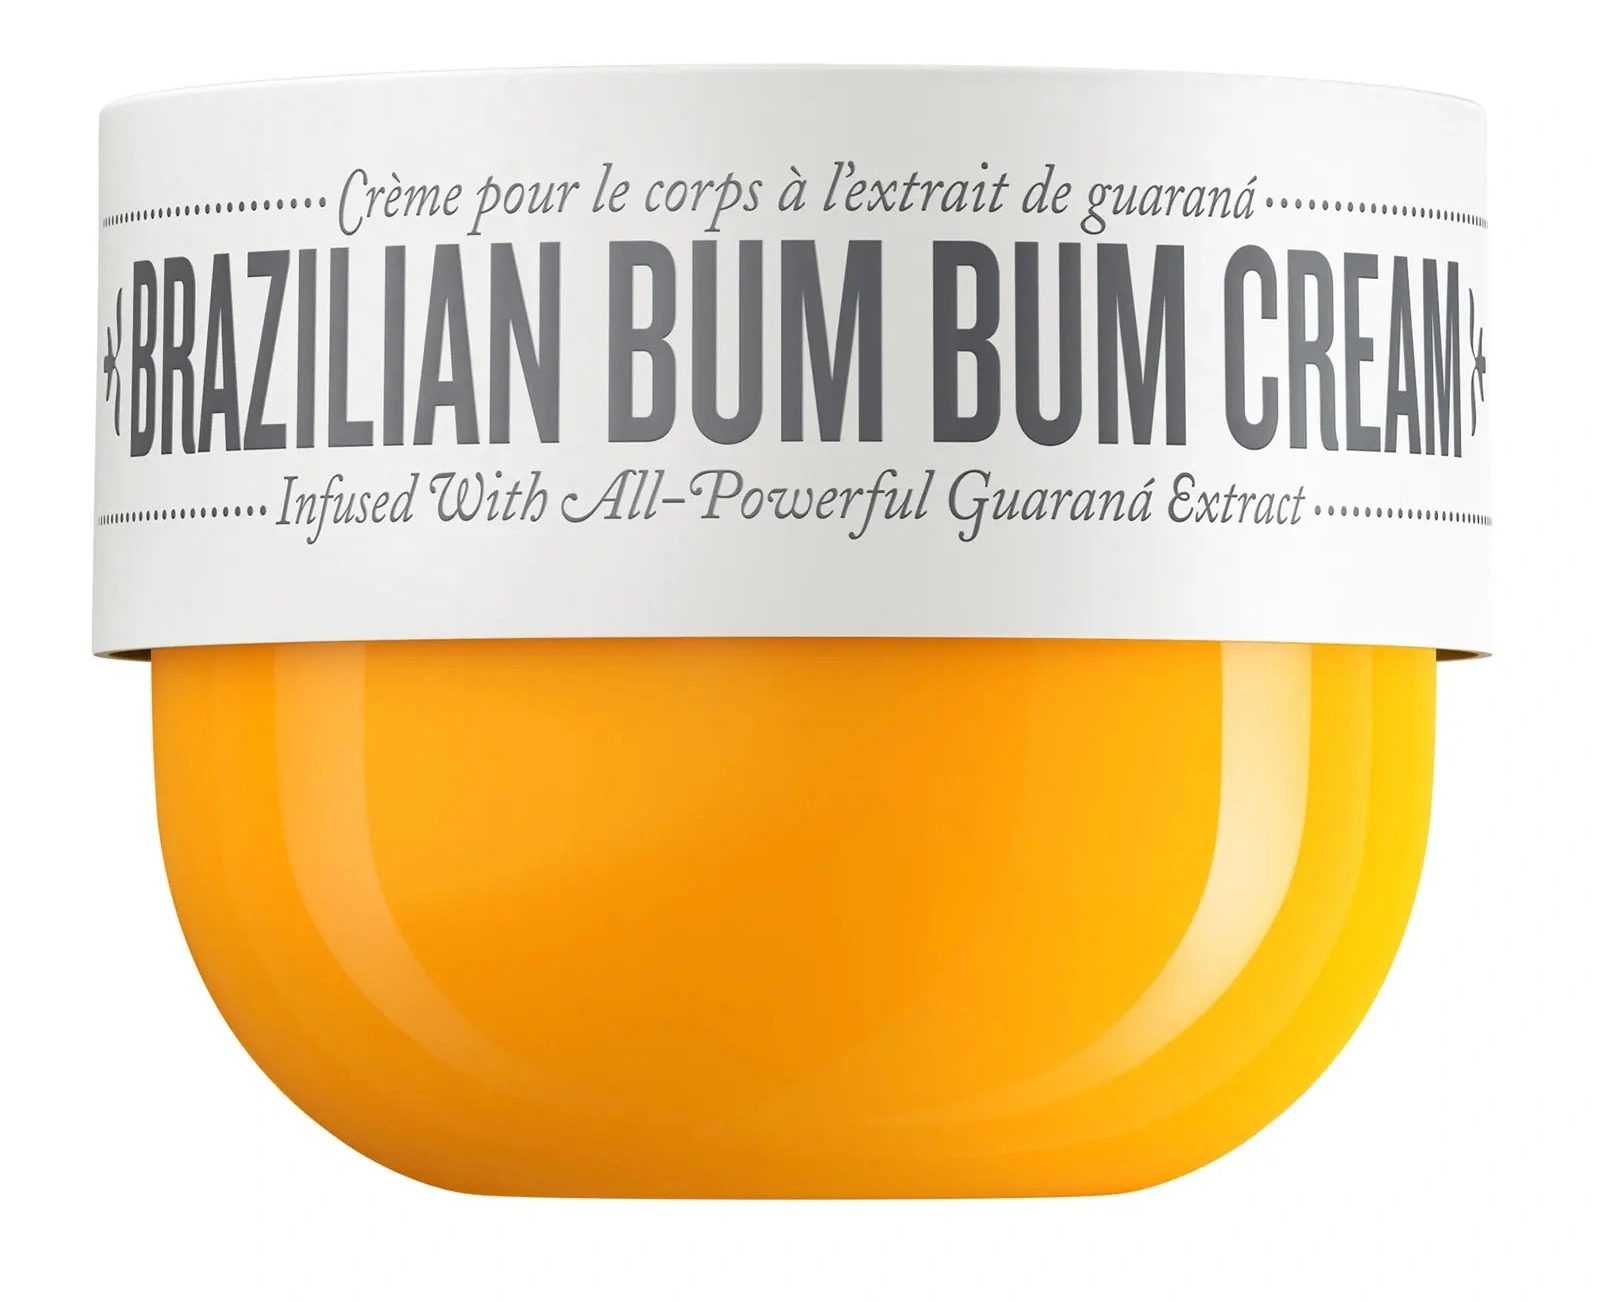 Die reichhaltige und glättende brasilianische Bum-Bum-Creme von Sol de Janeiro kostet 40,80 £ bei Sephora.co.uk